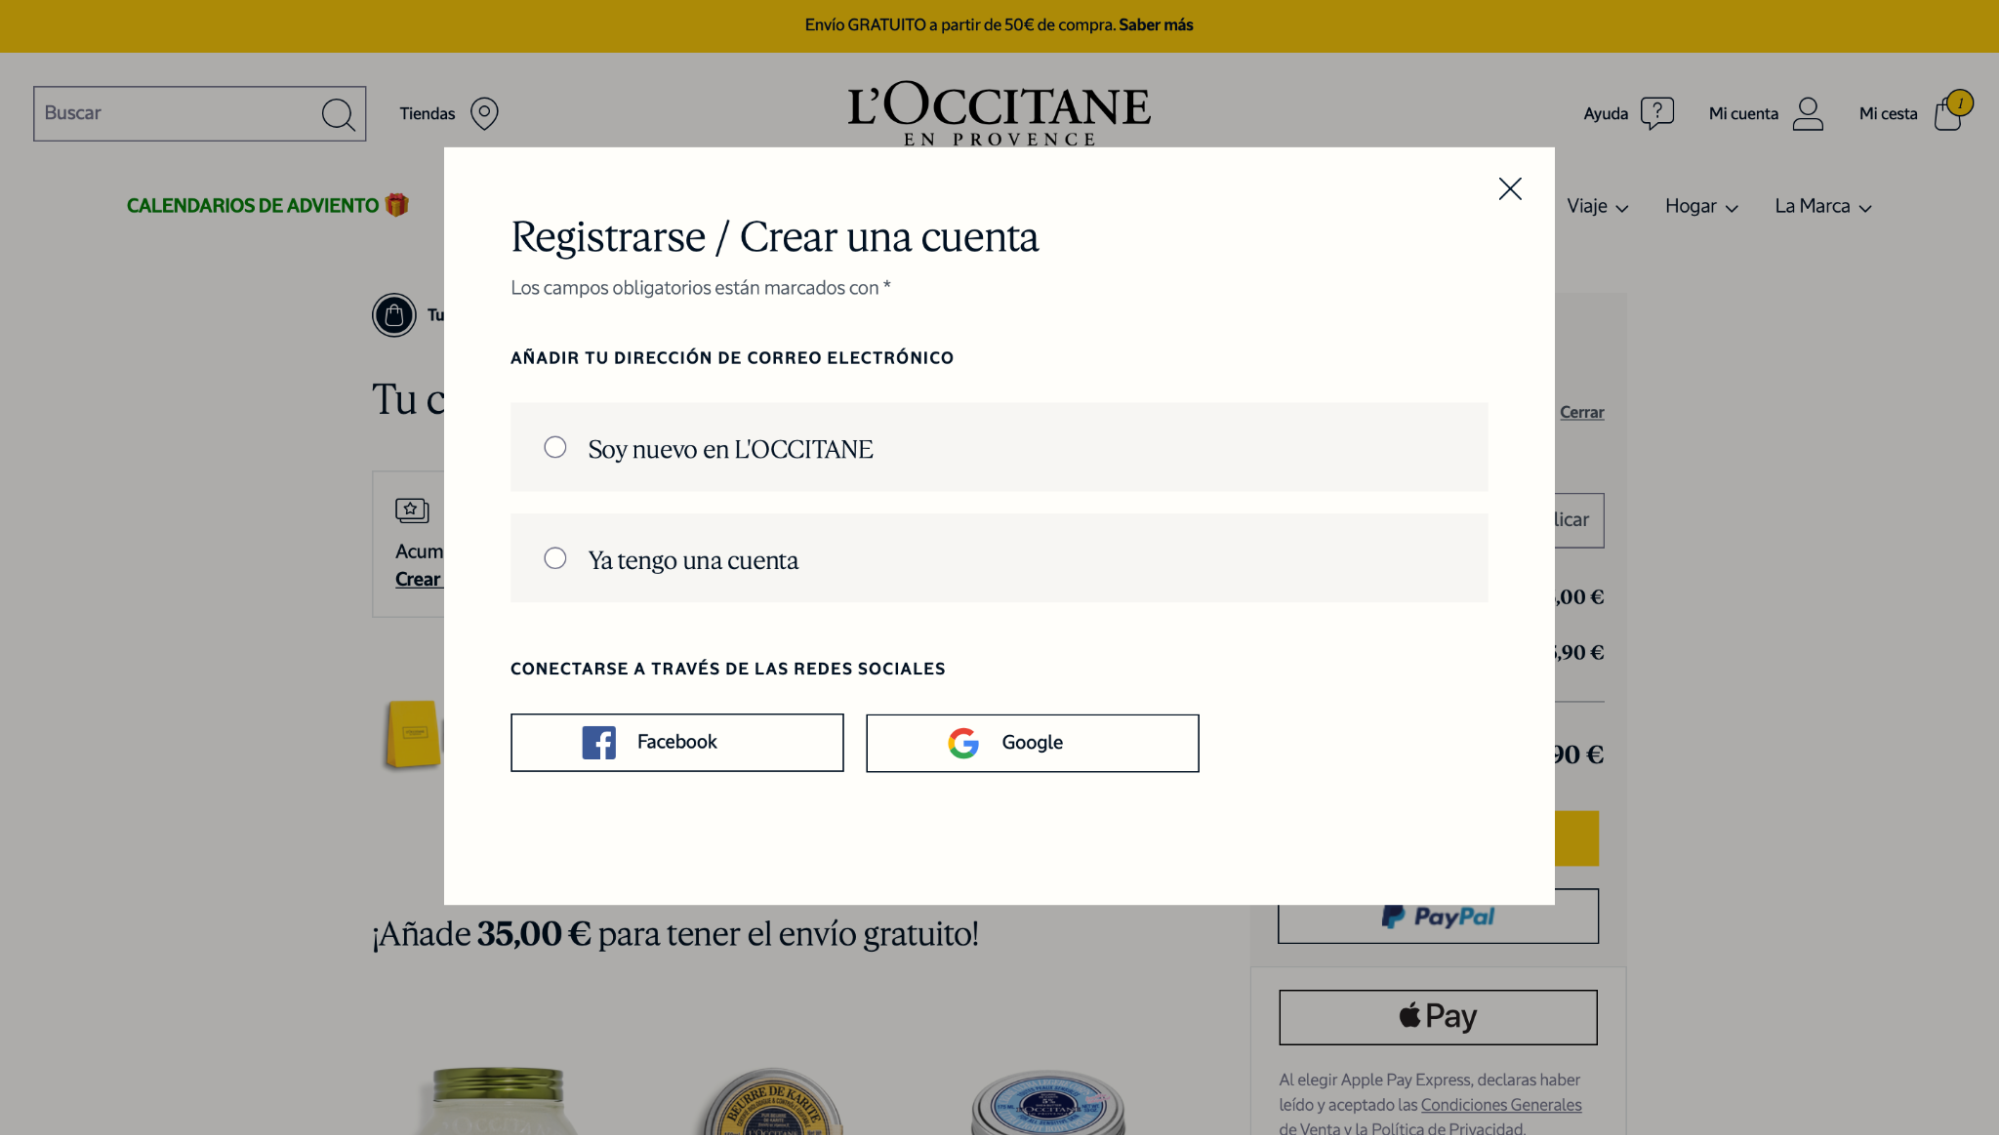 Imagen 10: Usar código promocional en L'Occitane